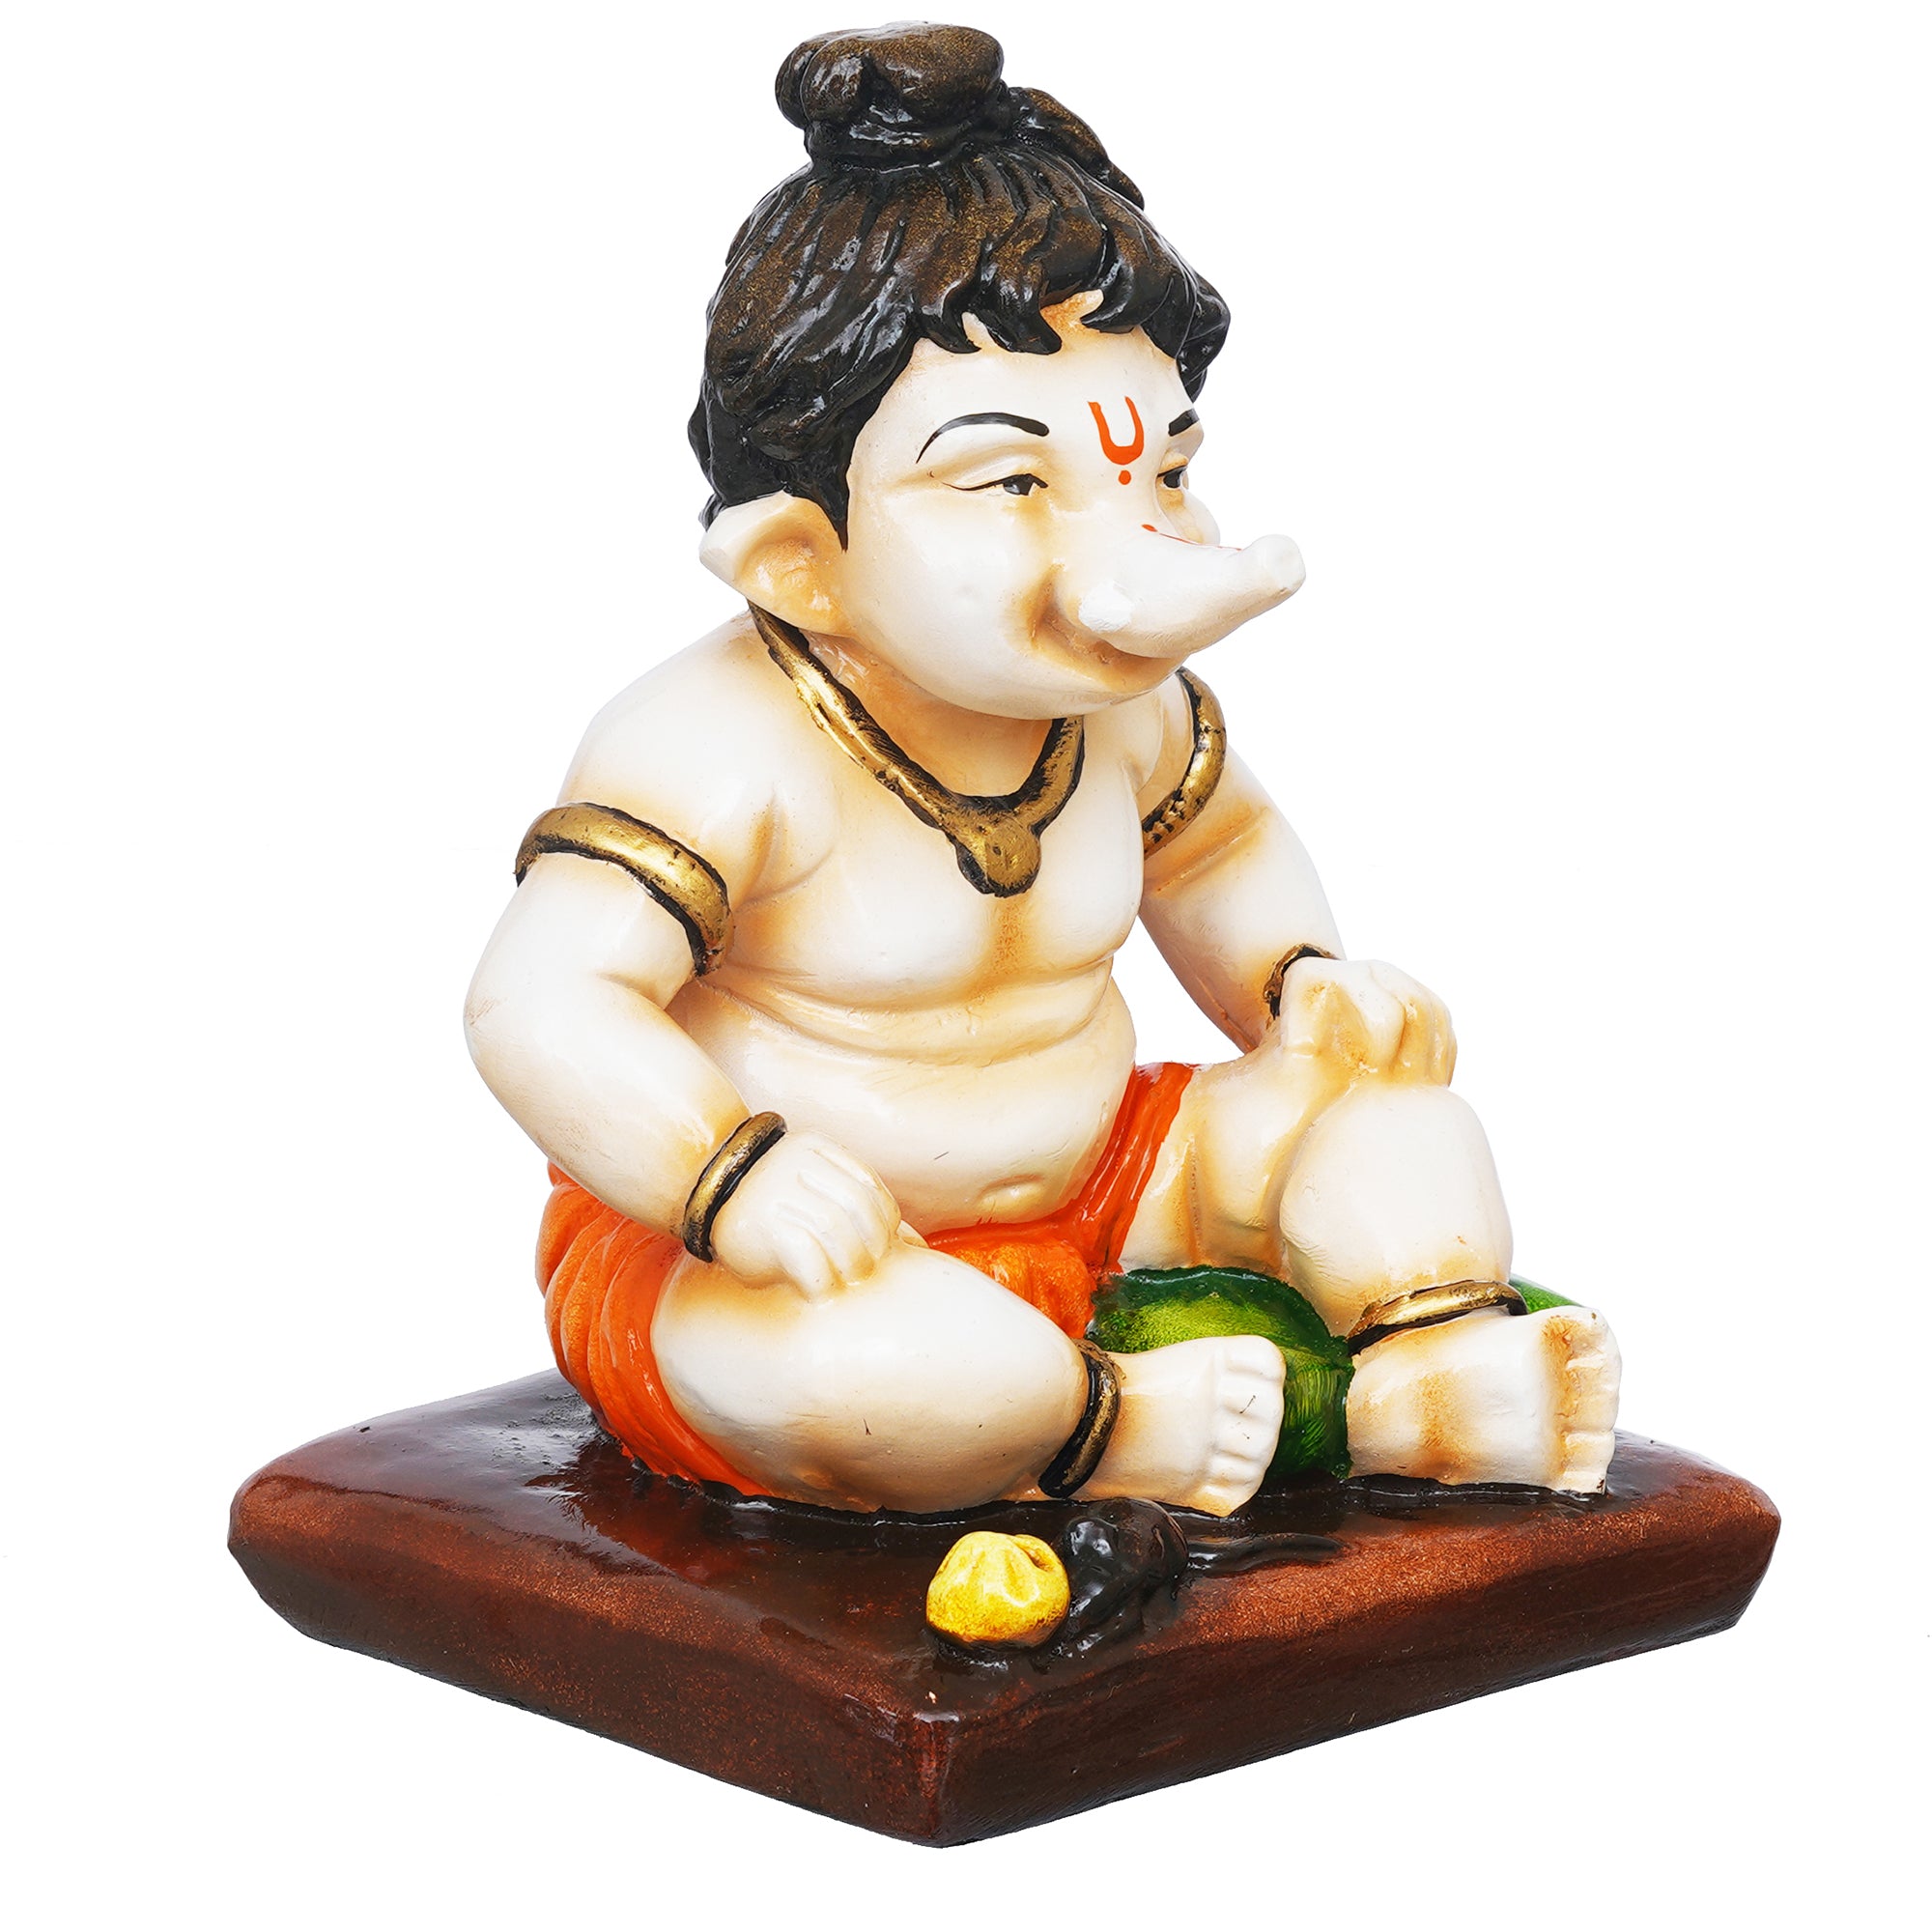 eCraftIndia Multicolor Polyresin Handcrafted Sitting Lord Ganesha Idol 6